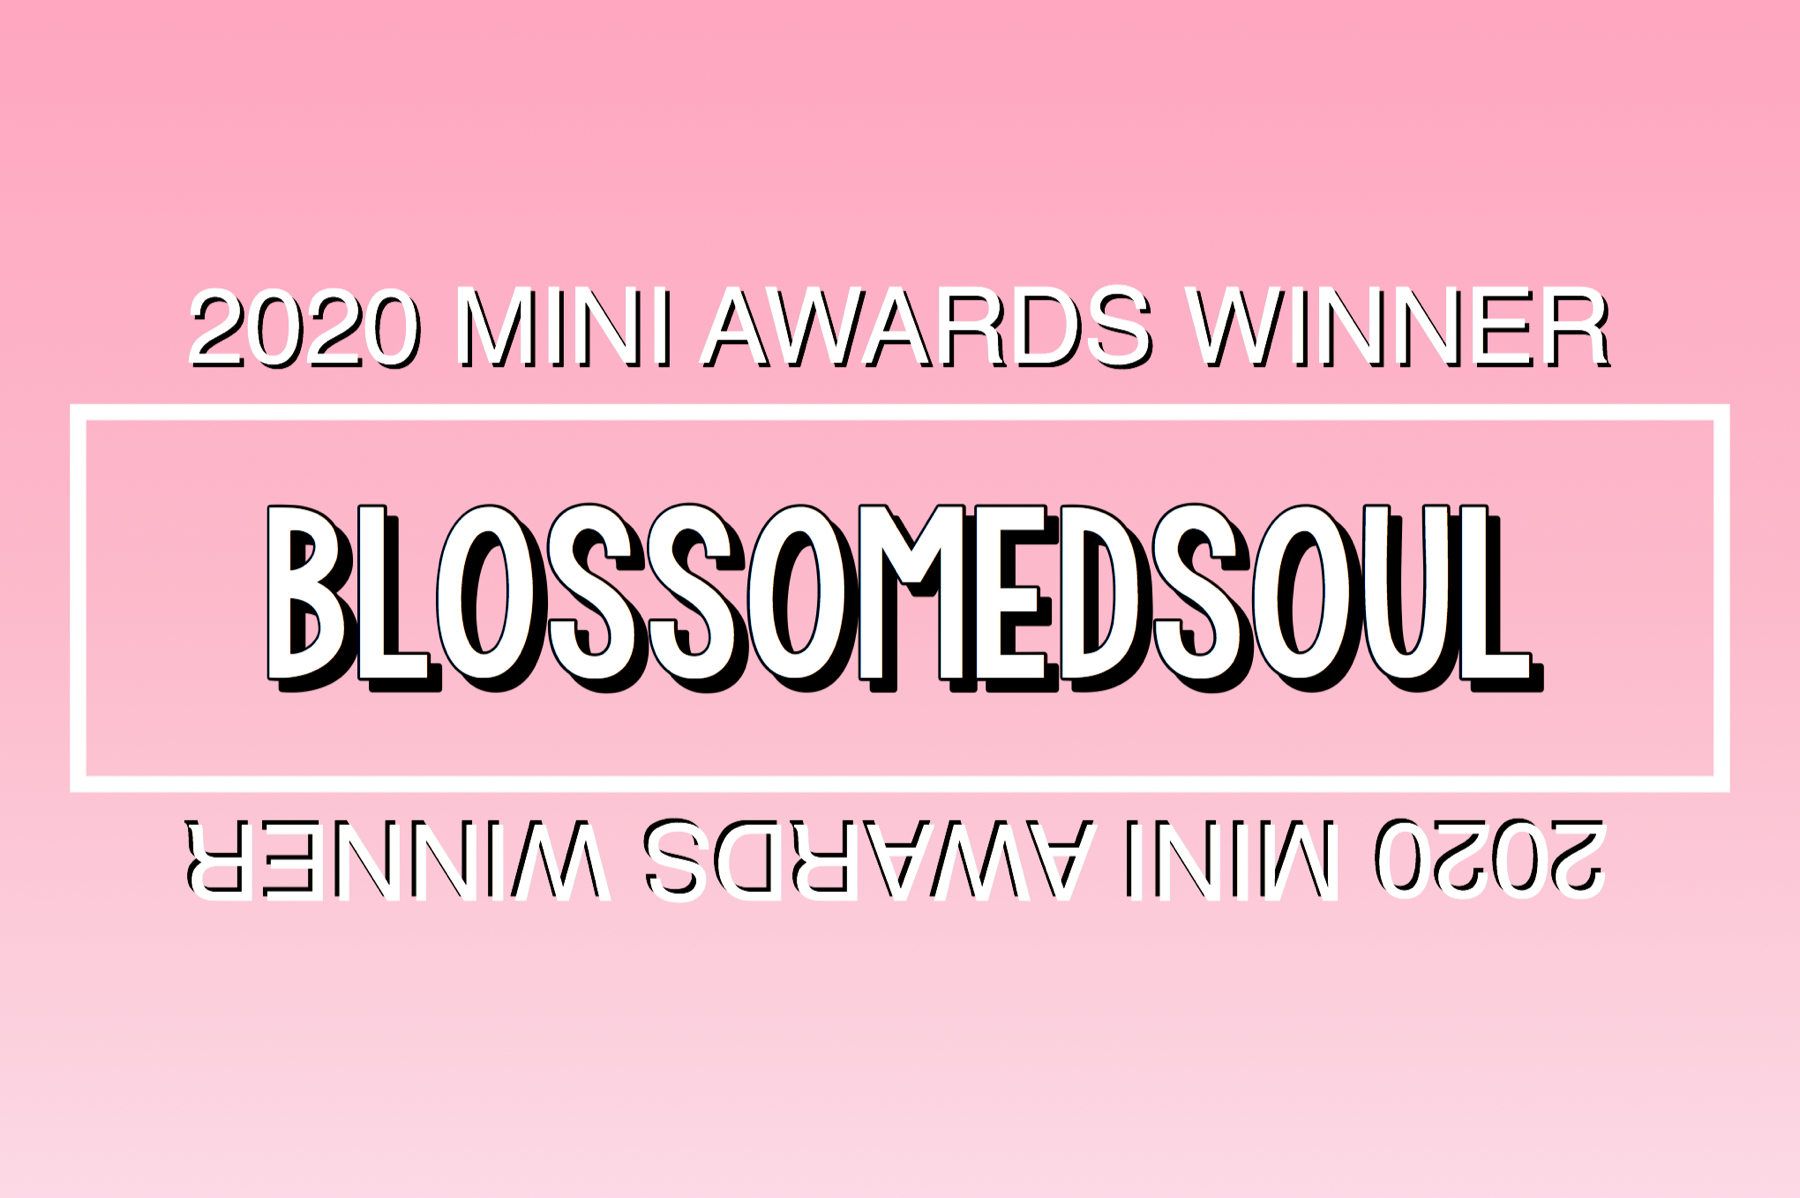 2020 Mini Awards Winner @blossomedsoul!